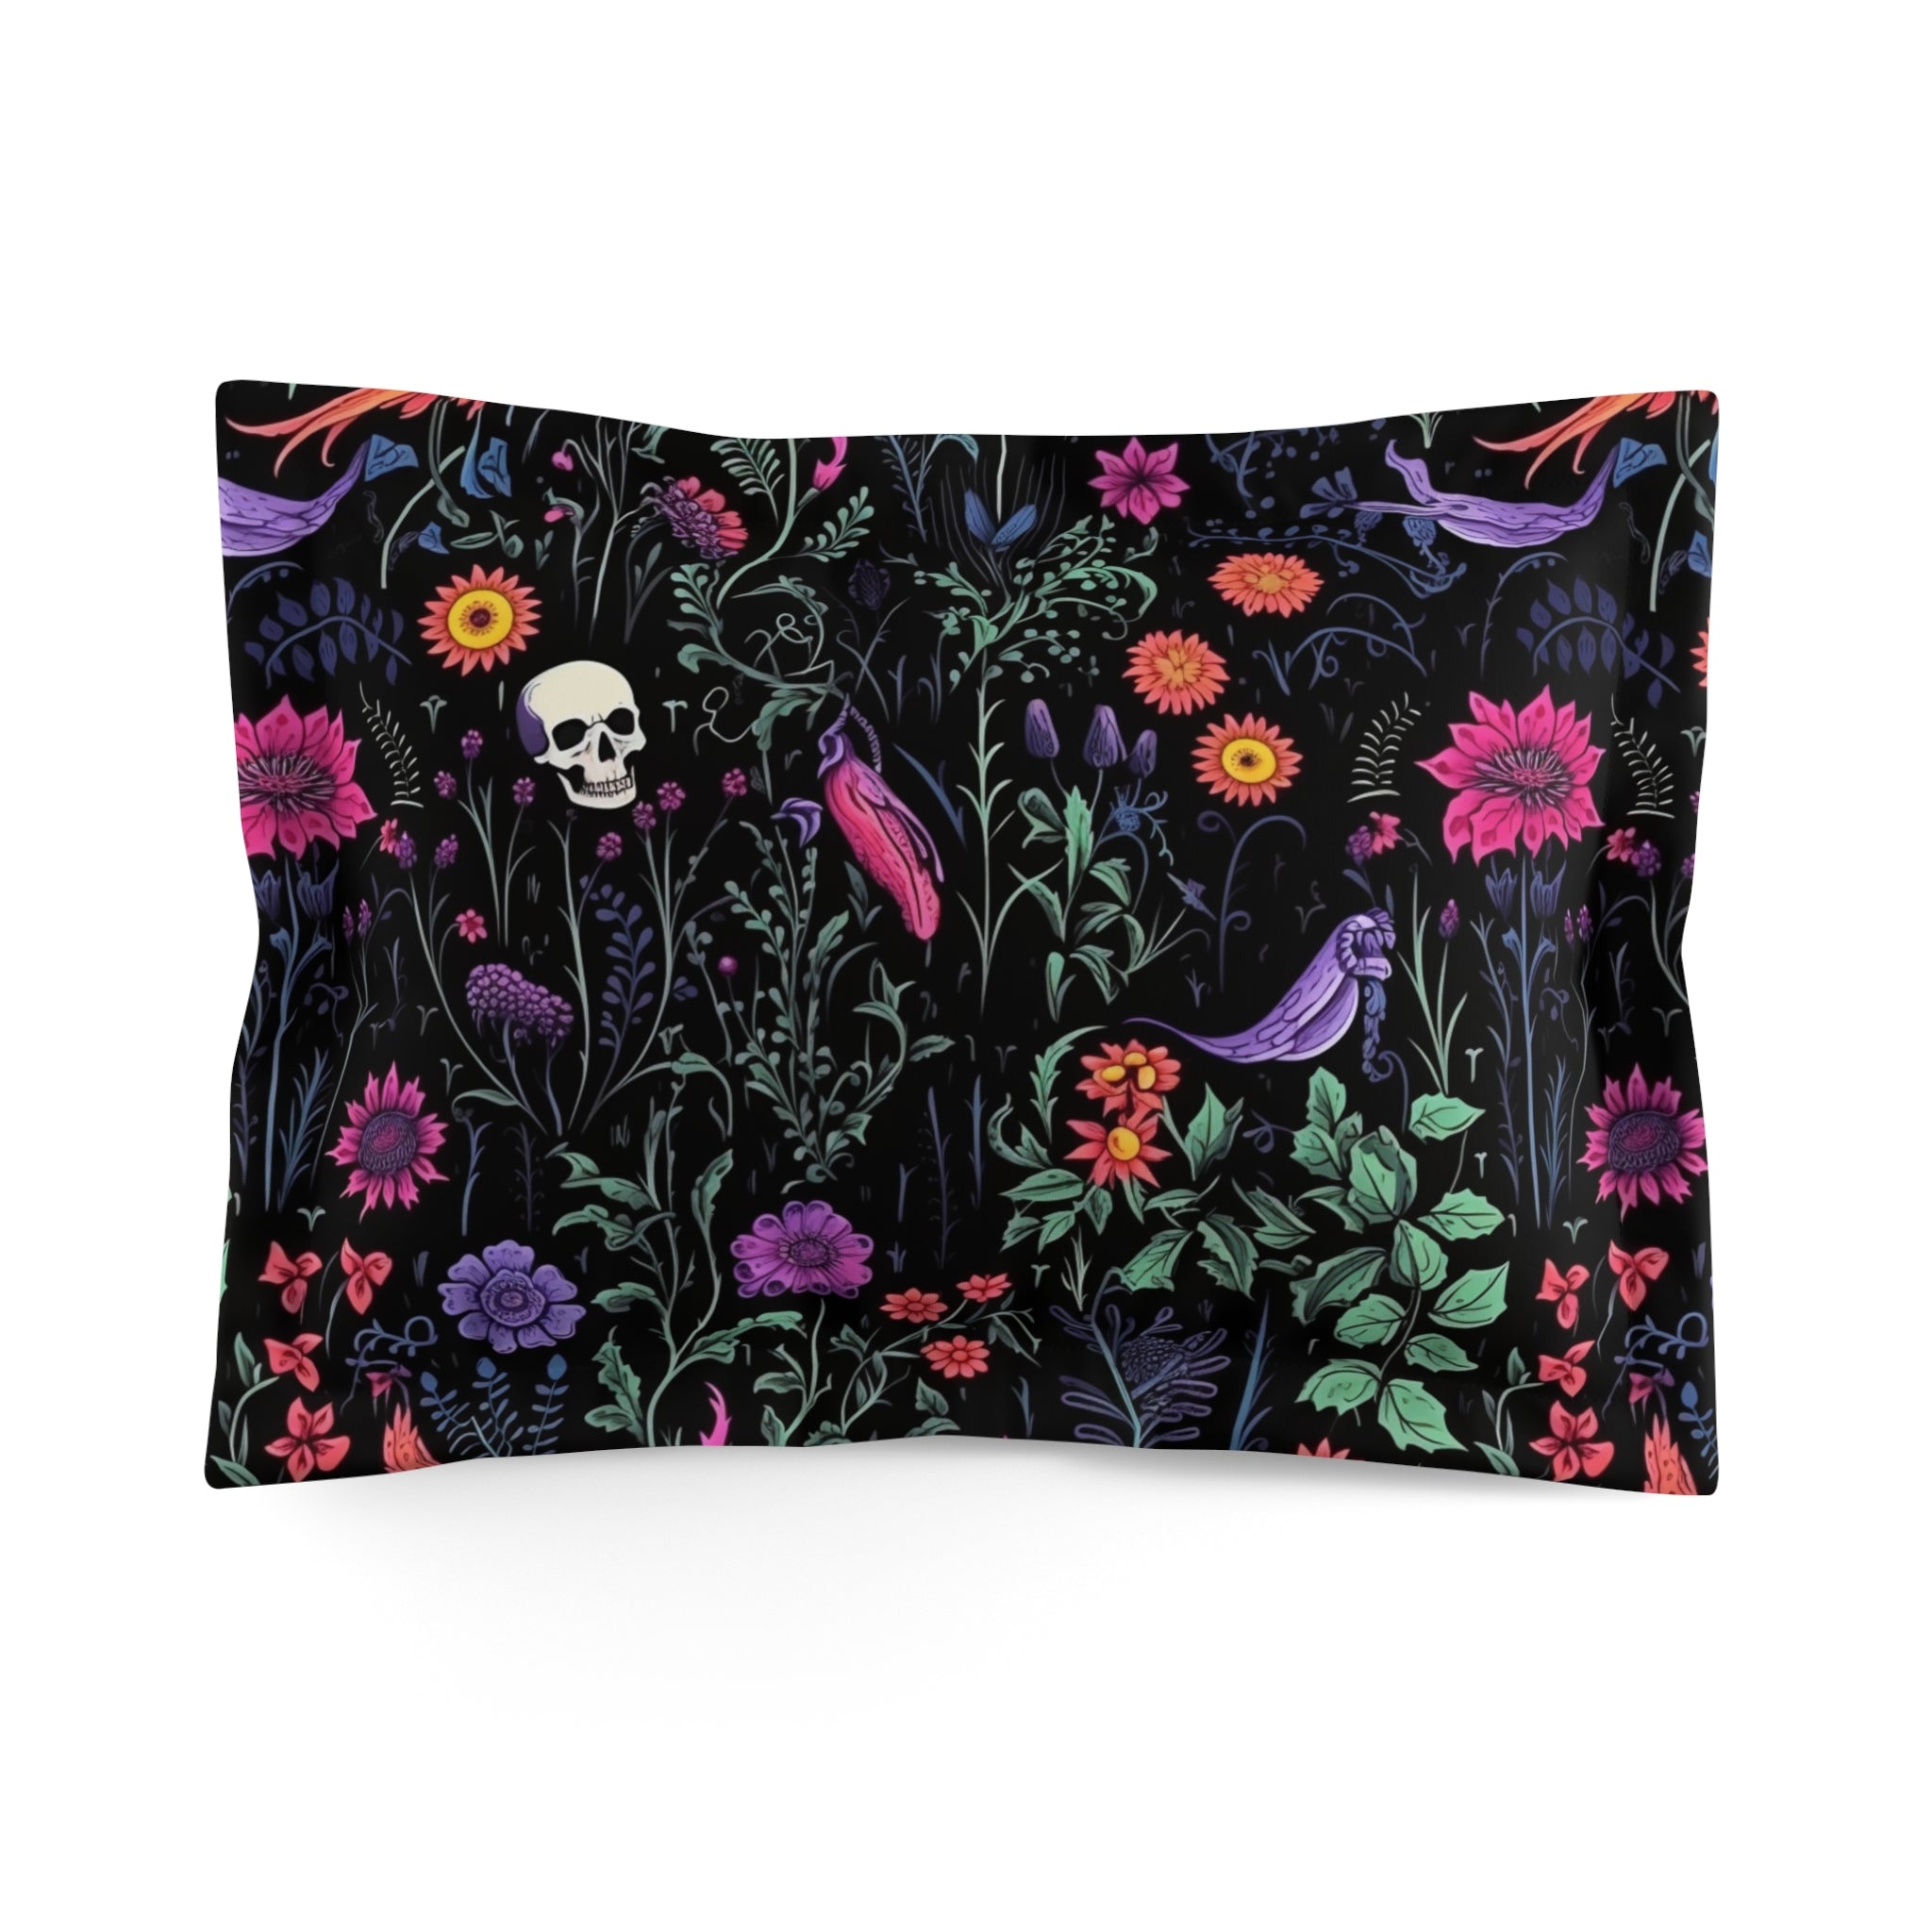 Eerie Wildflower Skull Duvet Cover and Pillow Shams, Microfiber